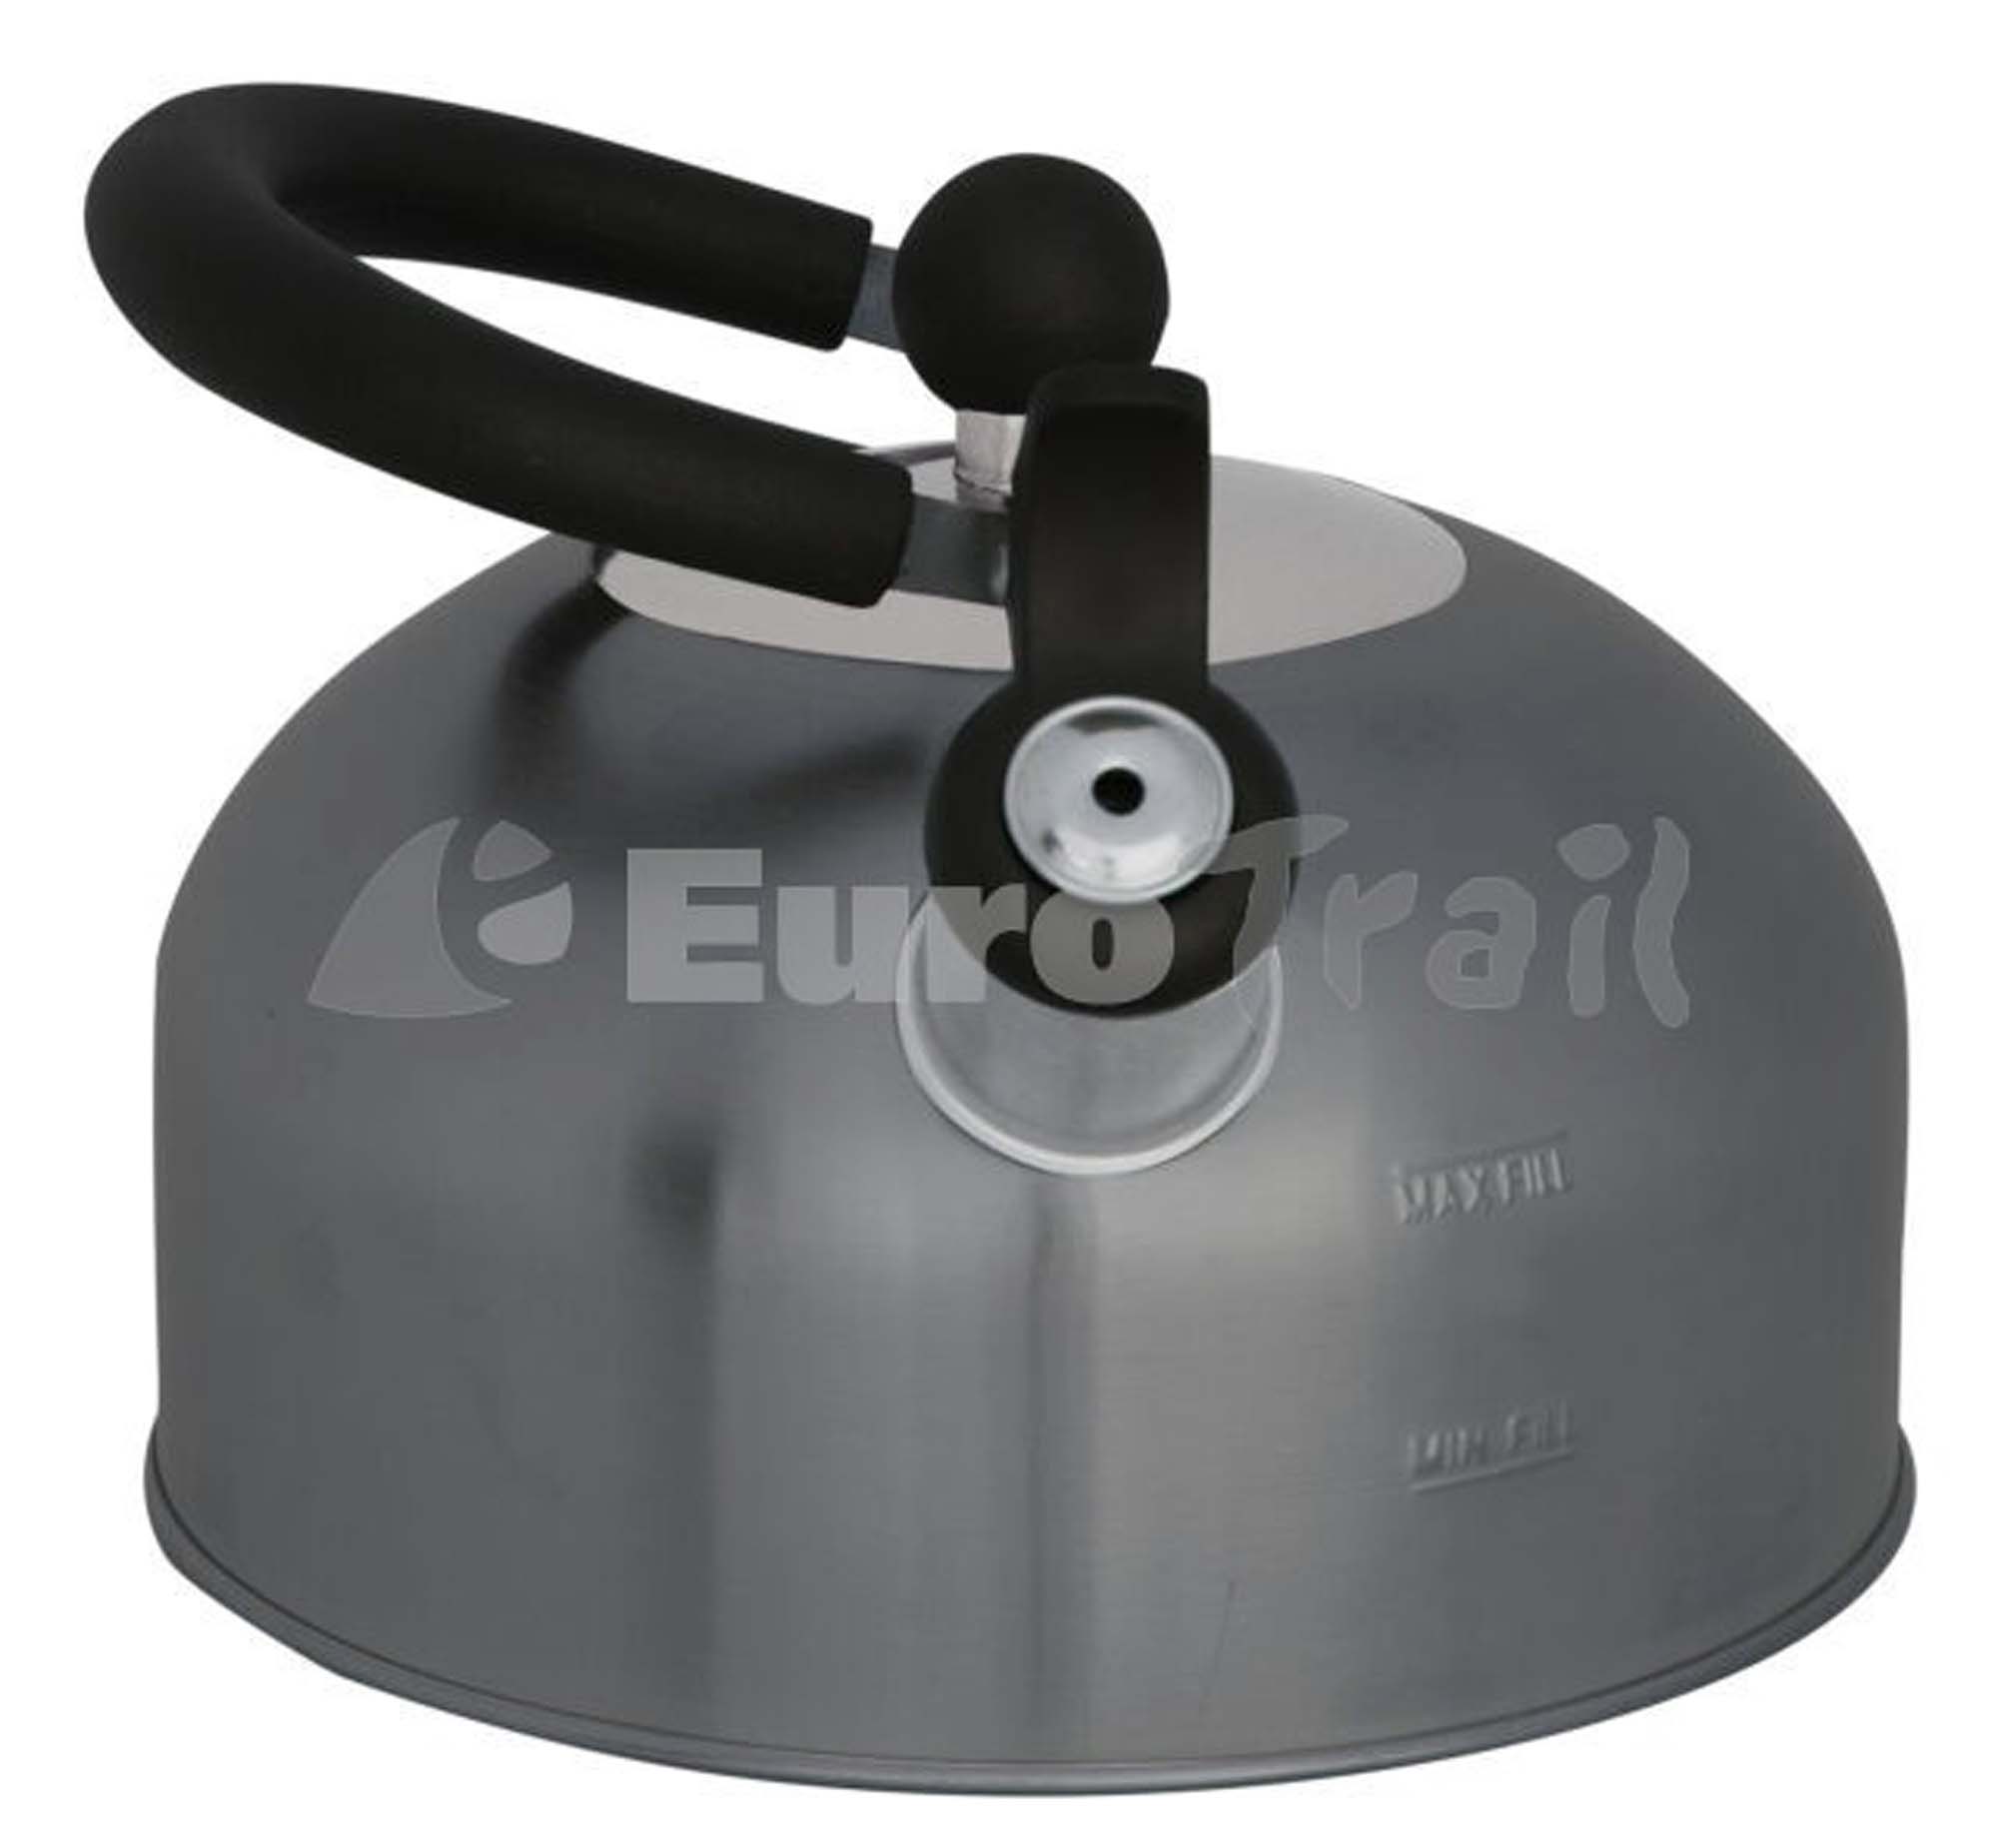 EUROTRAIL Fluitketel 1.5 Liter 